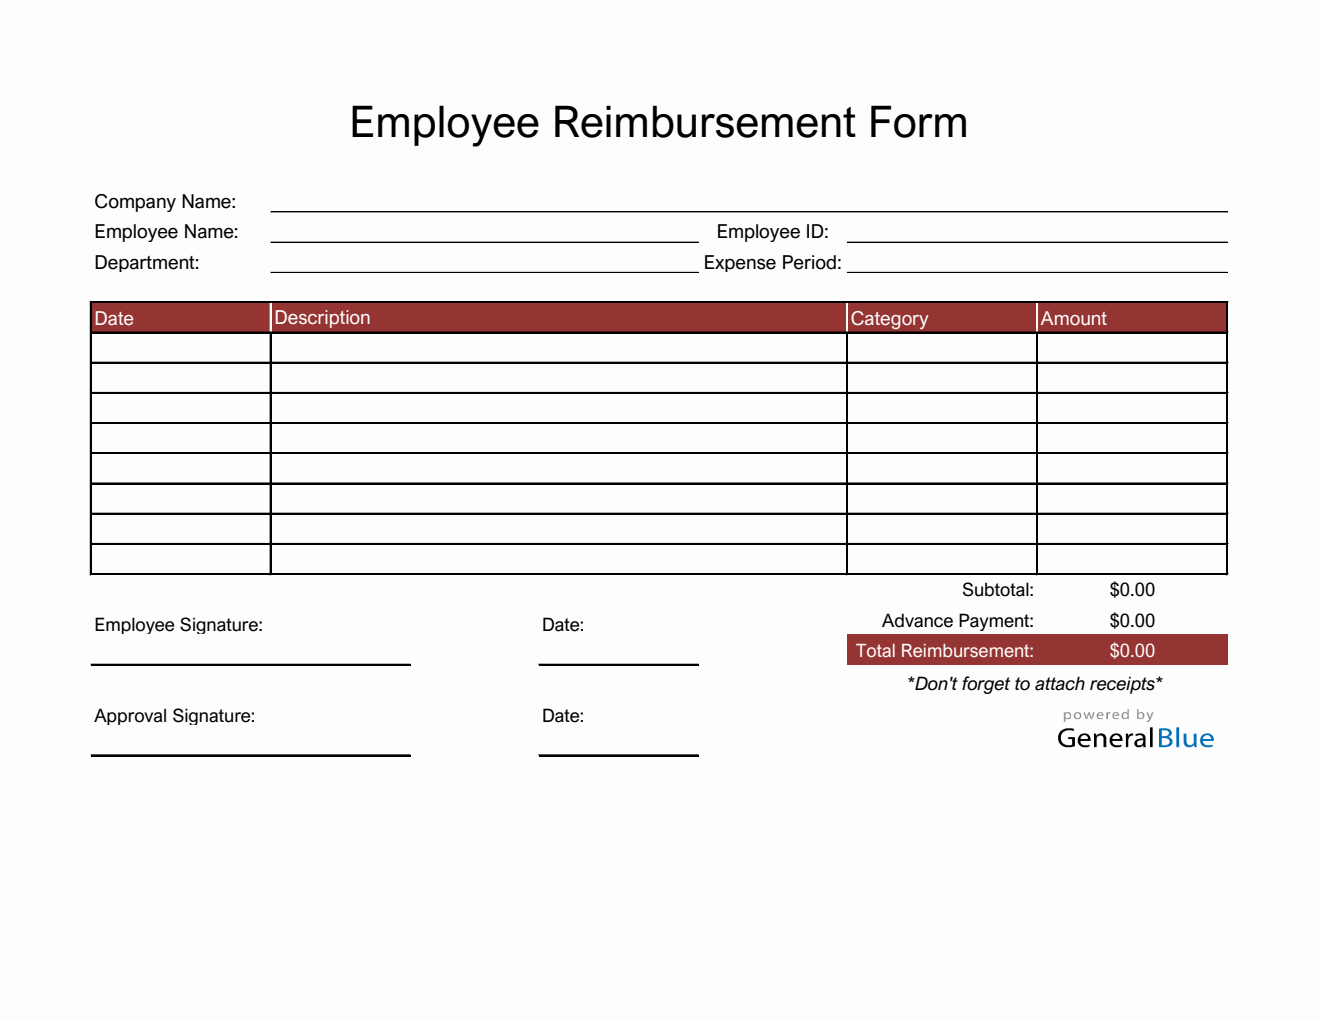 Employee Reimbursement Form in Excel (Red)